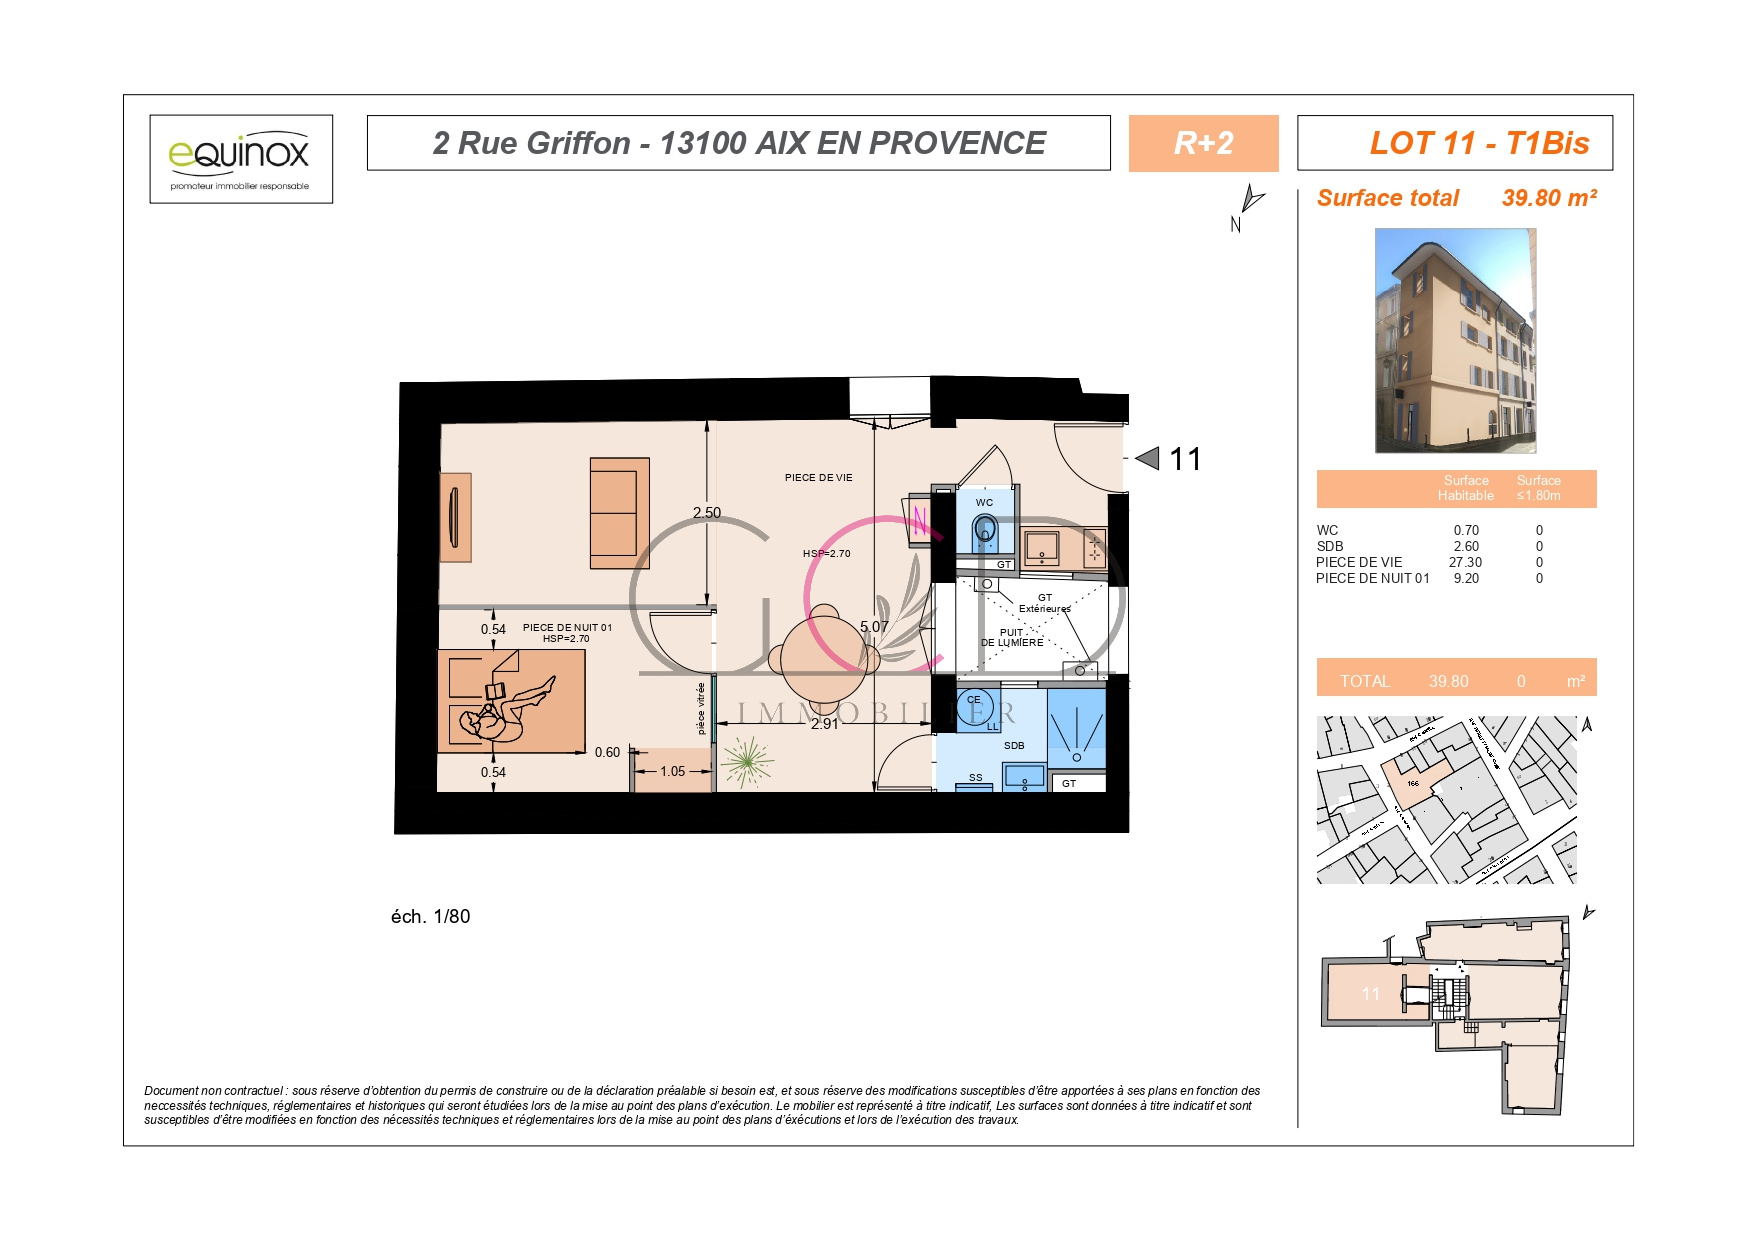 Vente Appartement 40m² 1 Pièce à Aix en Provence (13100) - Gcd Immobilier